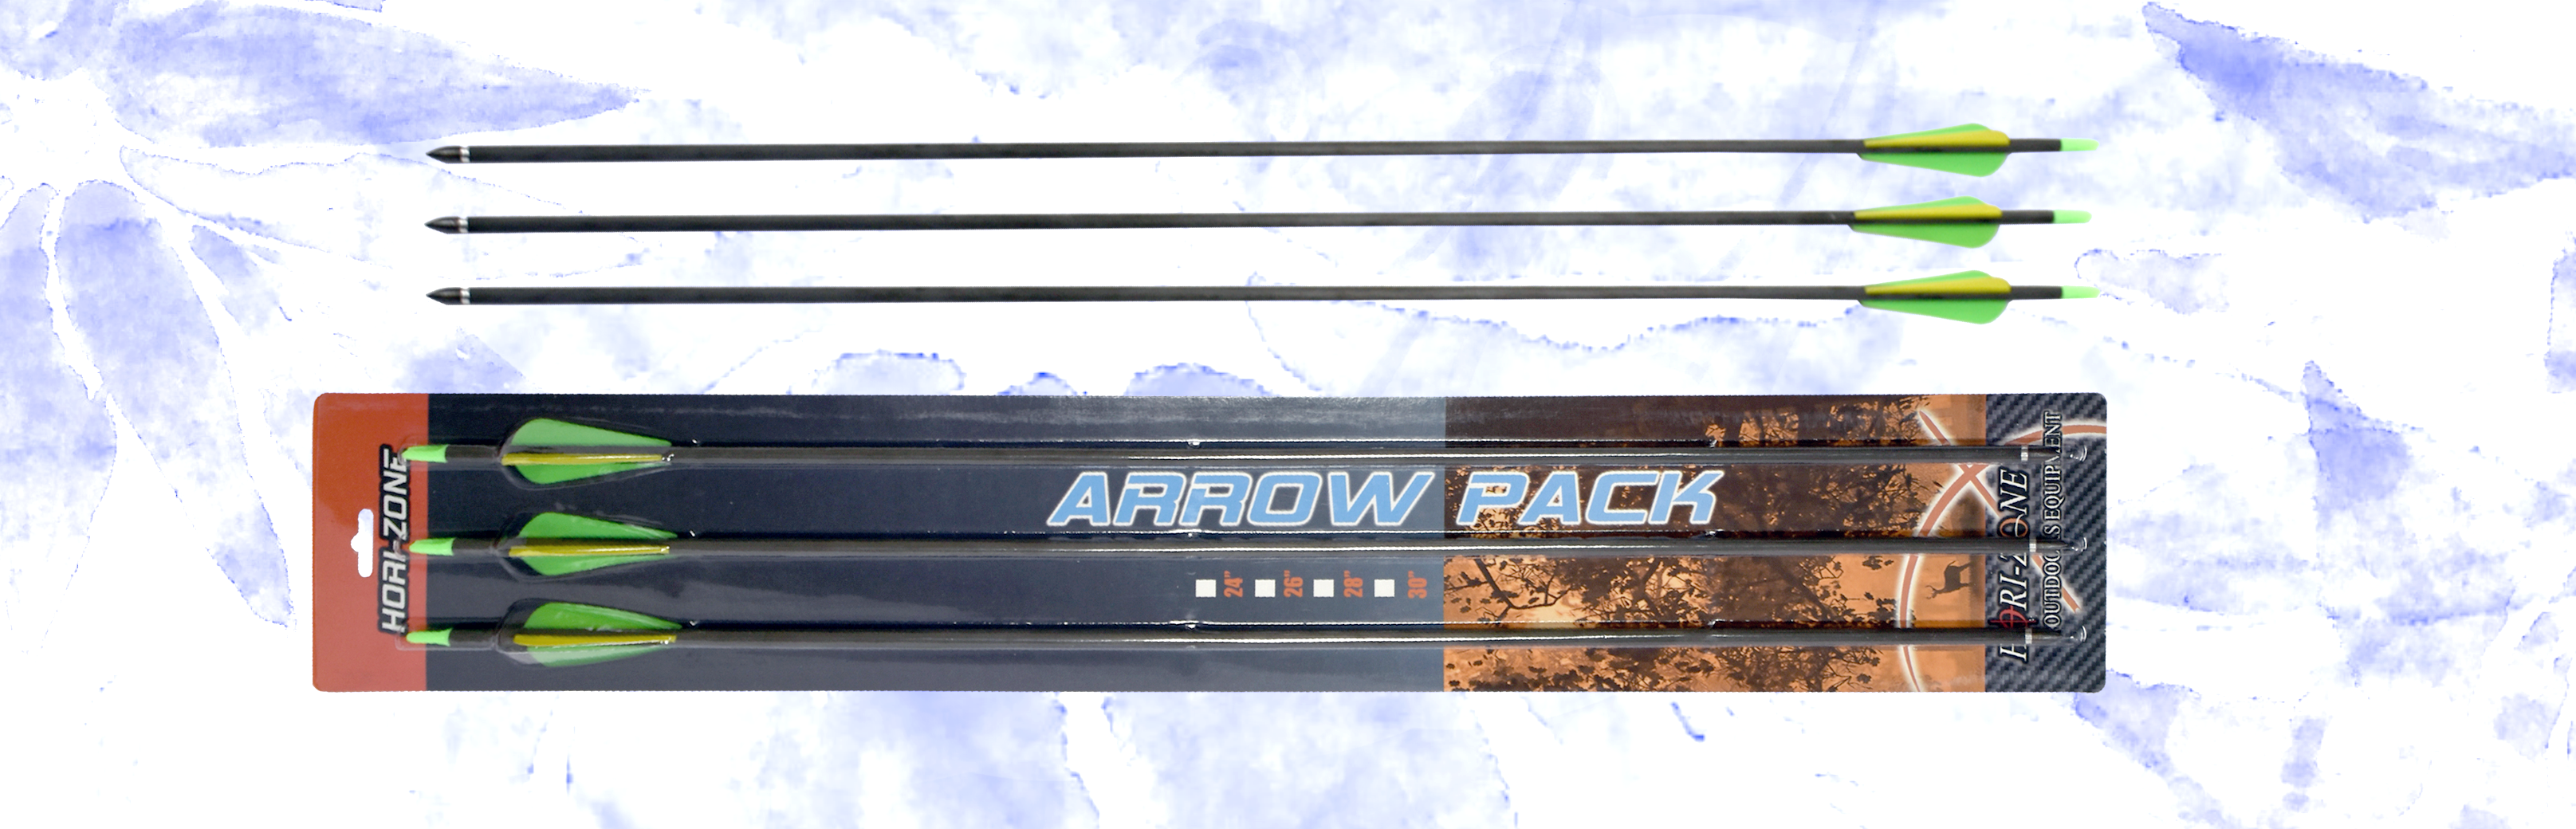 /archive/product/item/images/ArcheryCarbonArrow/Archery-Carbon-Arrow-2.png